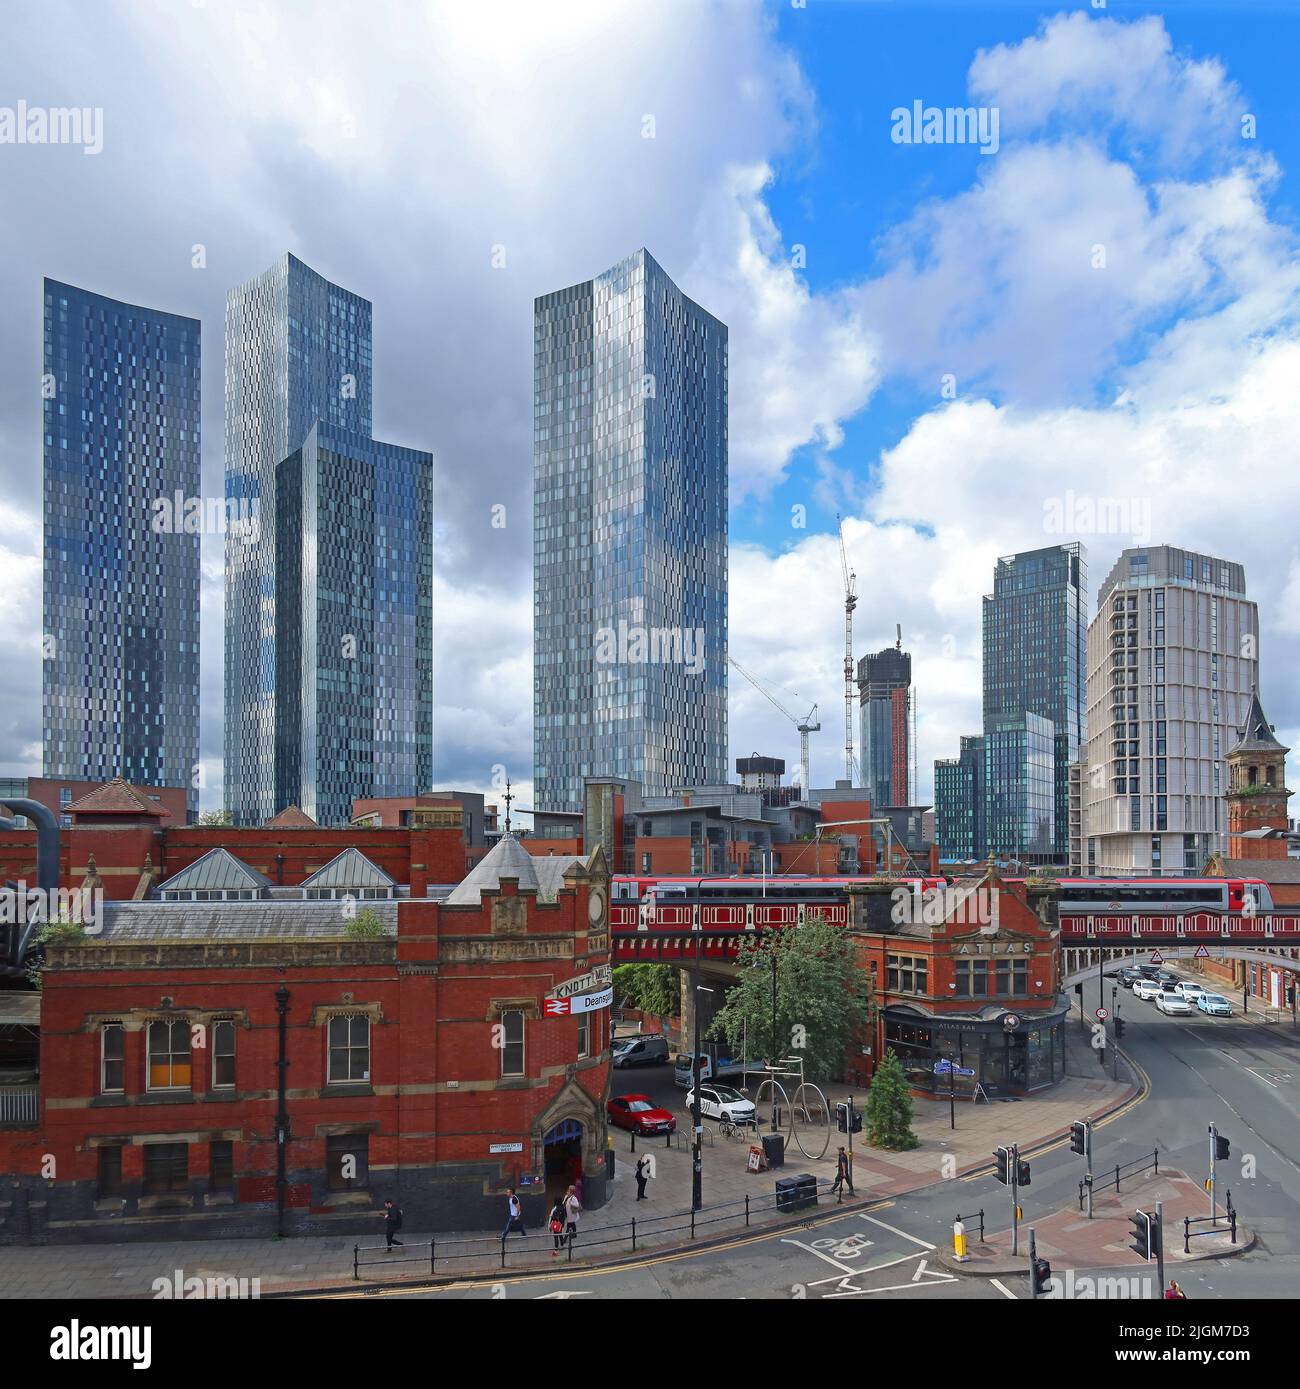 Panorama von Deansgate Castlefield, Manchester, 2 Whitworth St W, Deansgate, Locks, Manchester, England, UK, M1 5LH Stockfoto